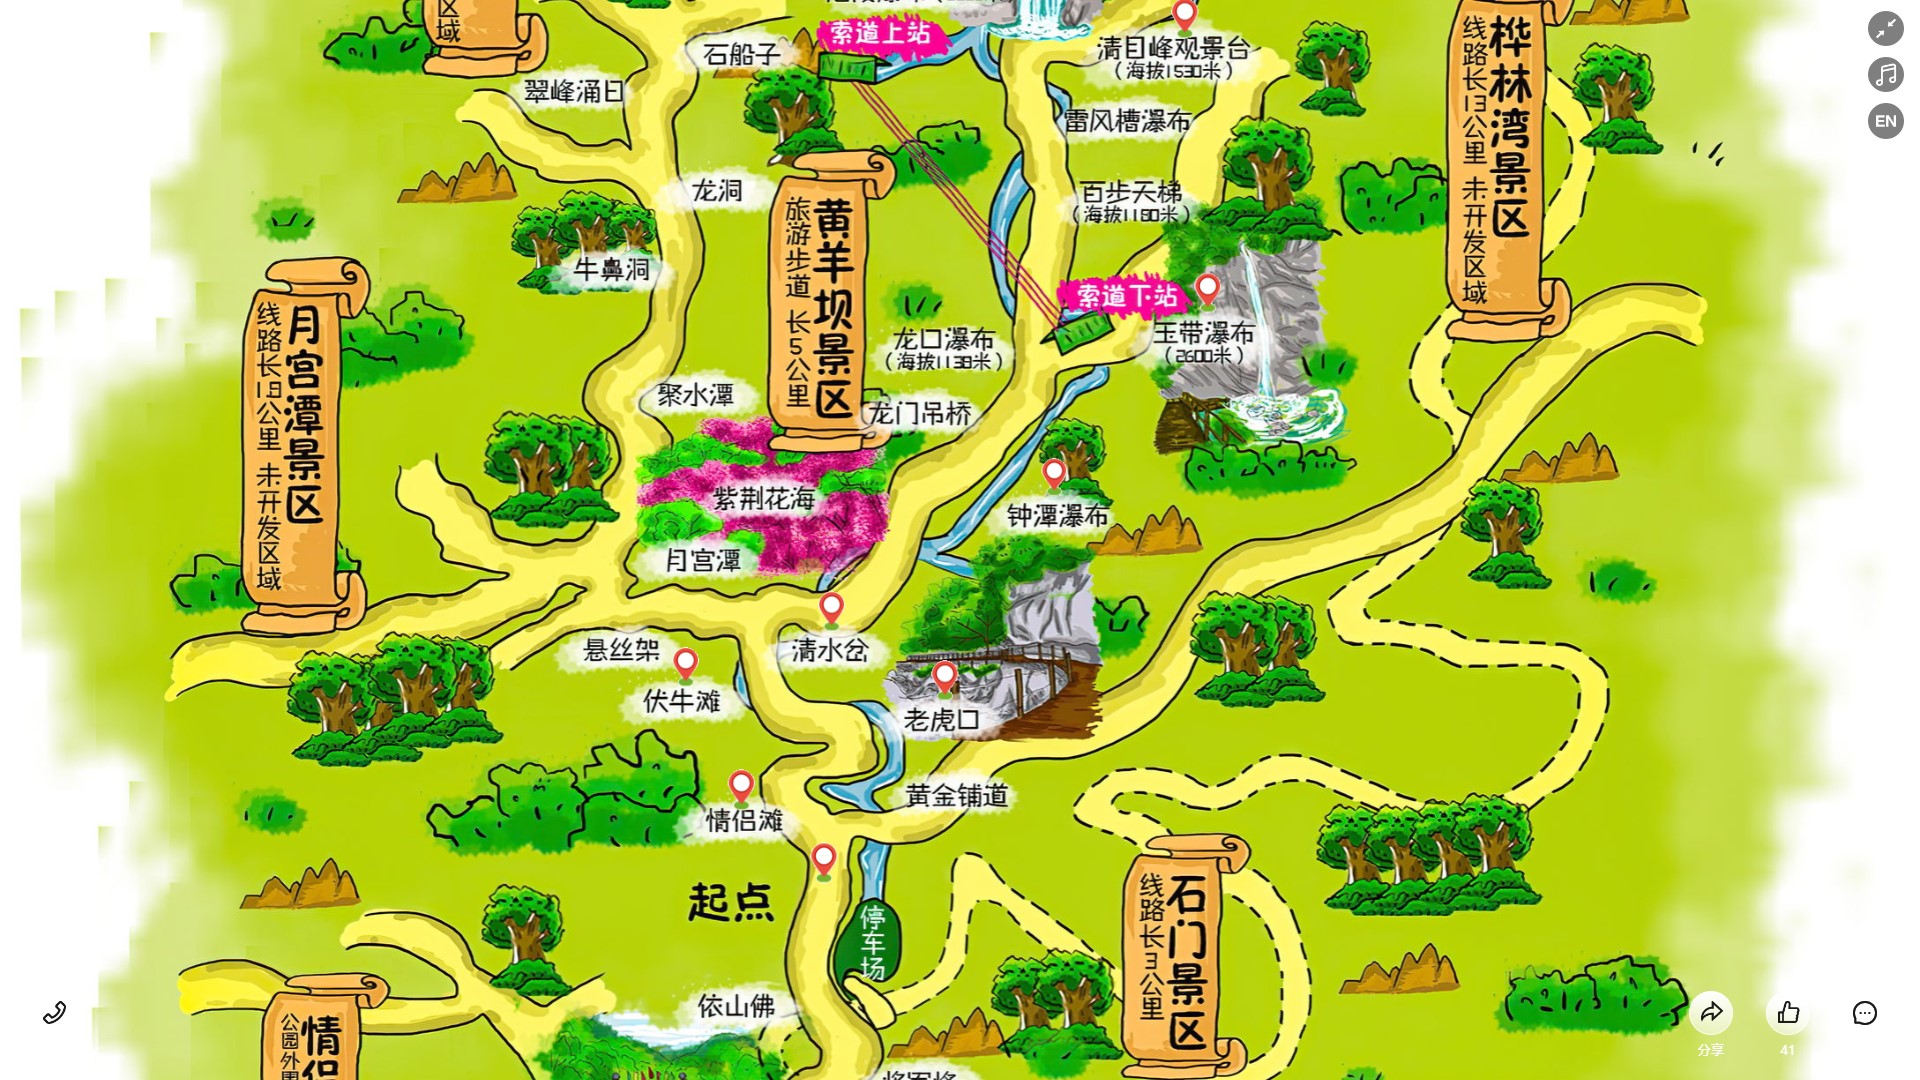 江苏景区导览系统